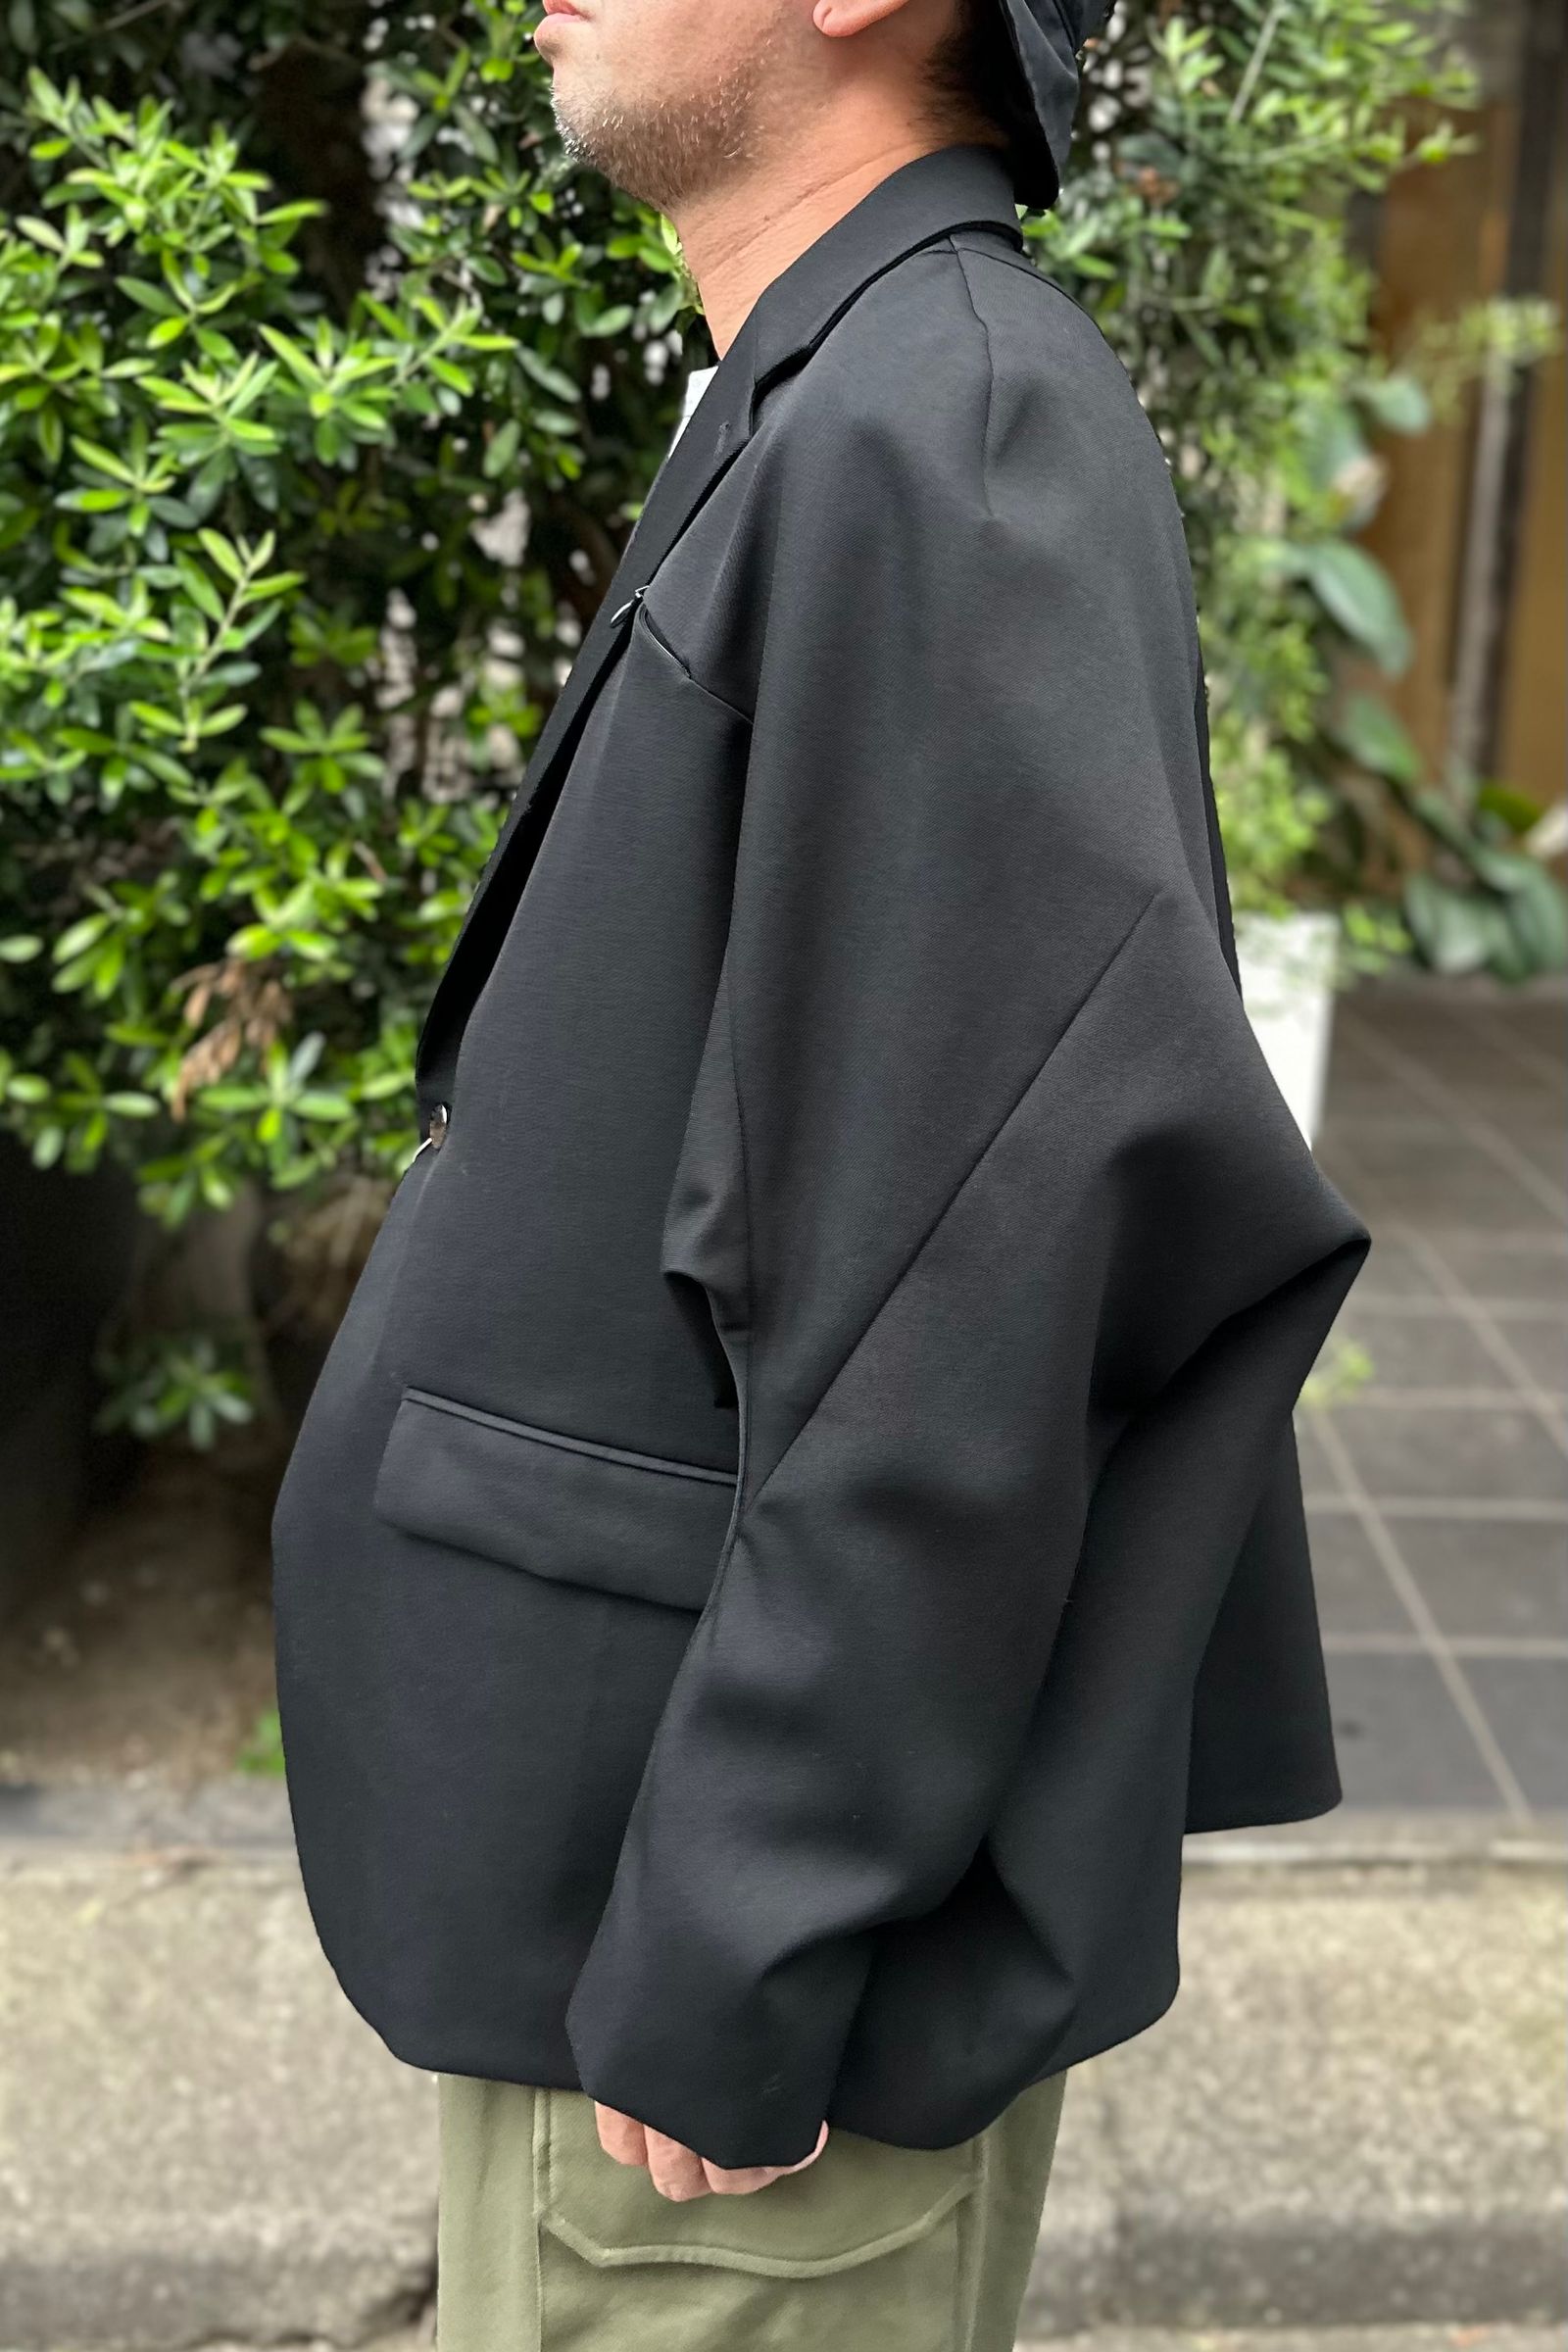 FUMITO GANRYU - Kinetic Jacket -black- 23aw | asterisk